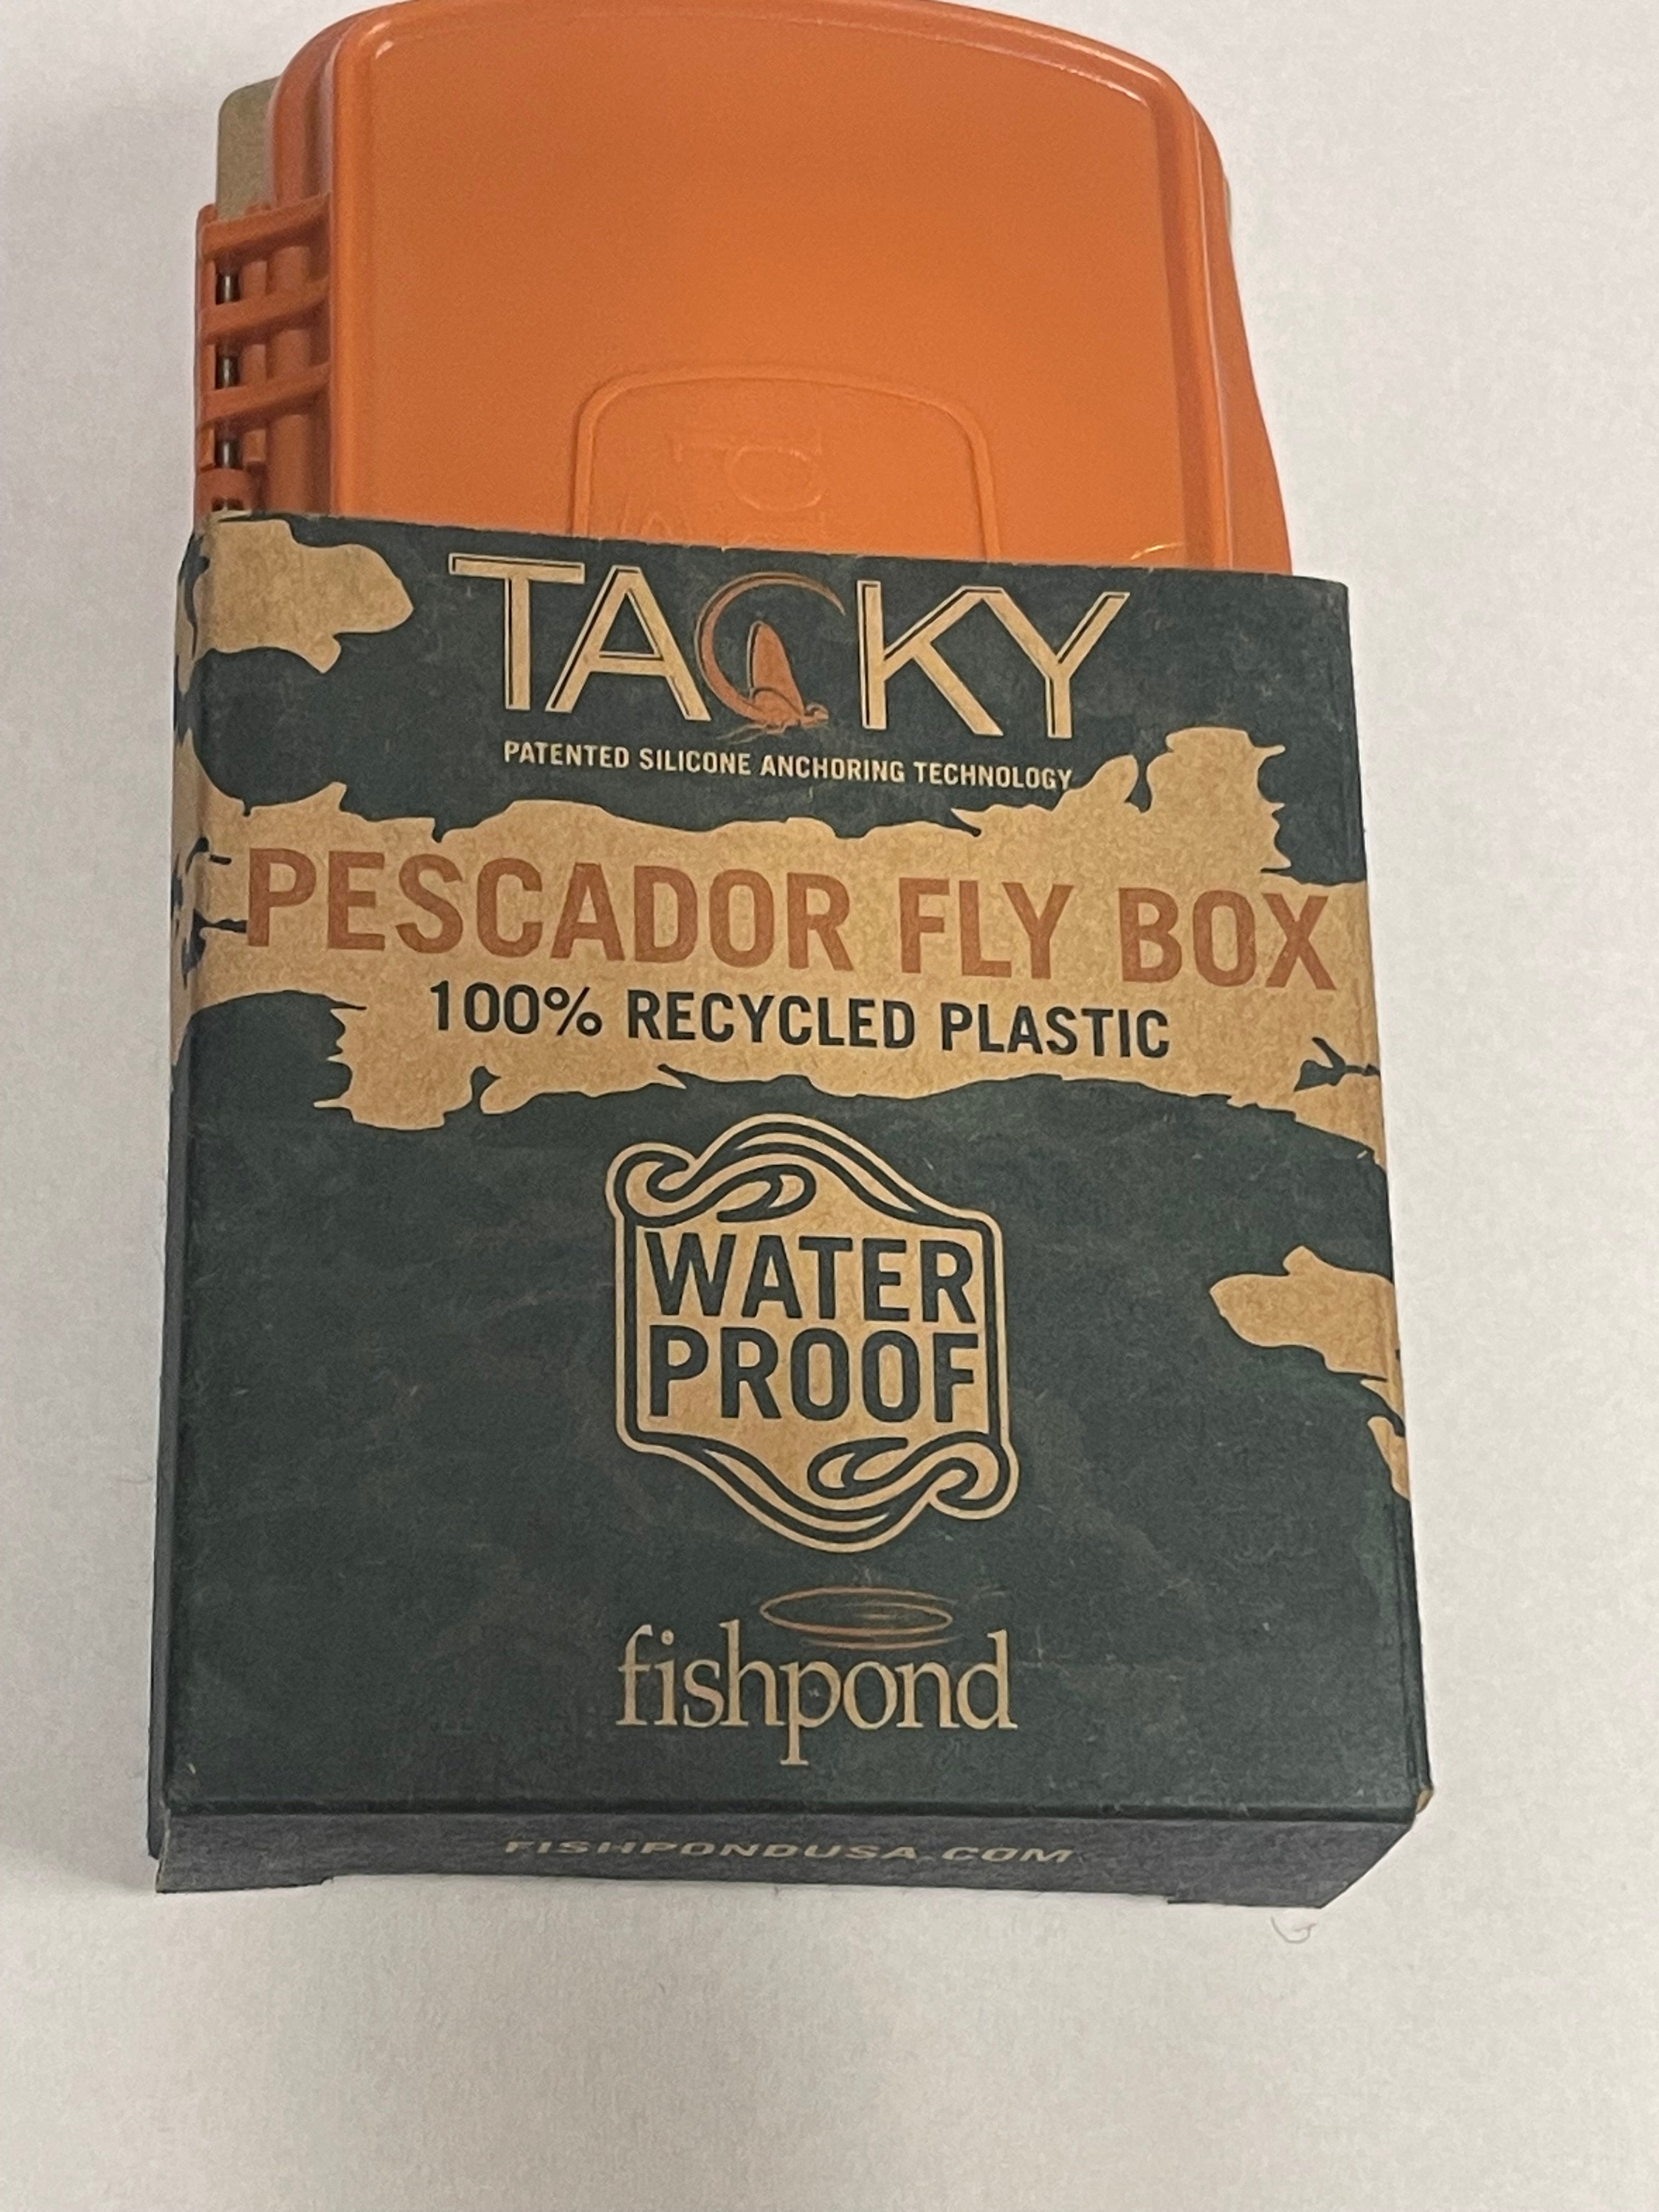 Tacky Pescador - MagPad - Small Fly Box